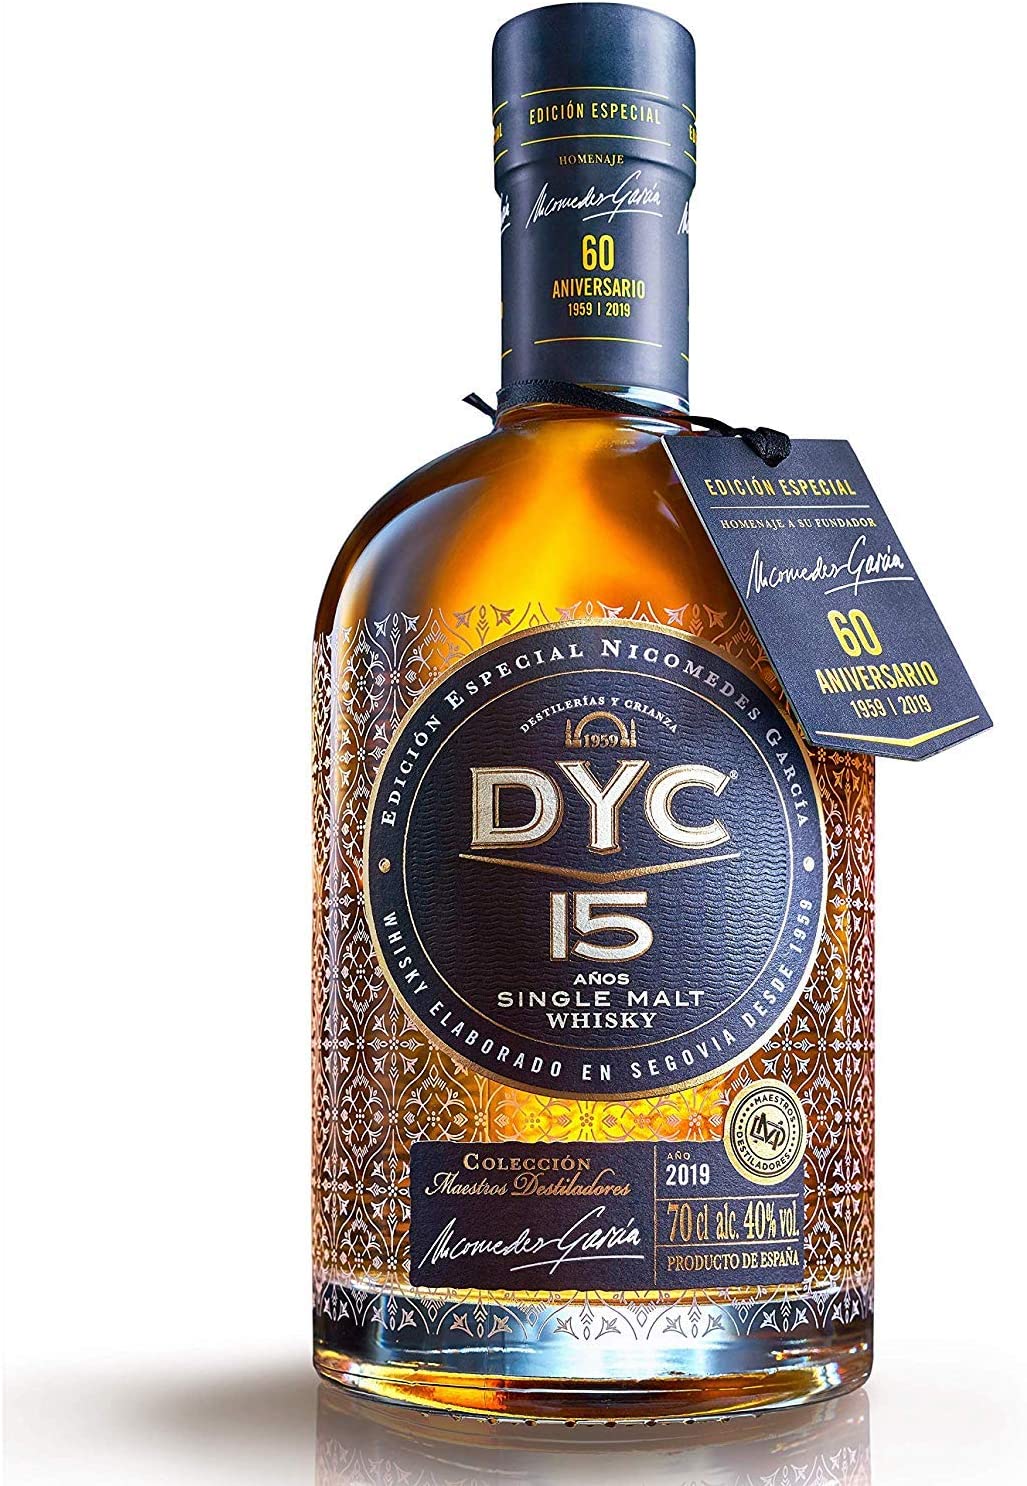 DYC 15 Años Edición Especial 60 Aniversario Single Malt Whisky